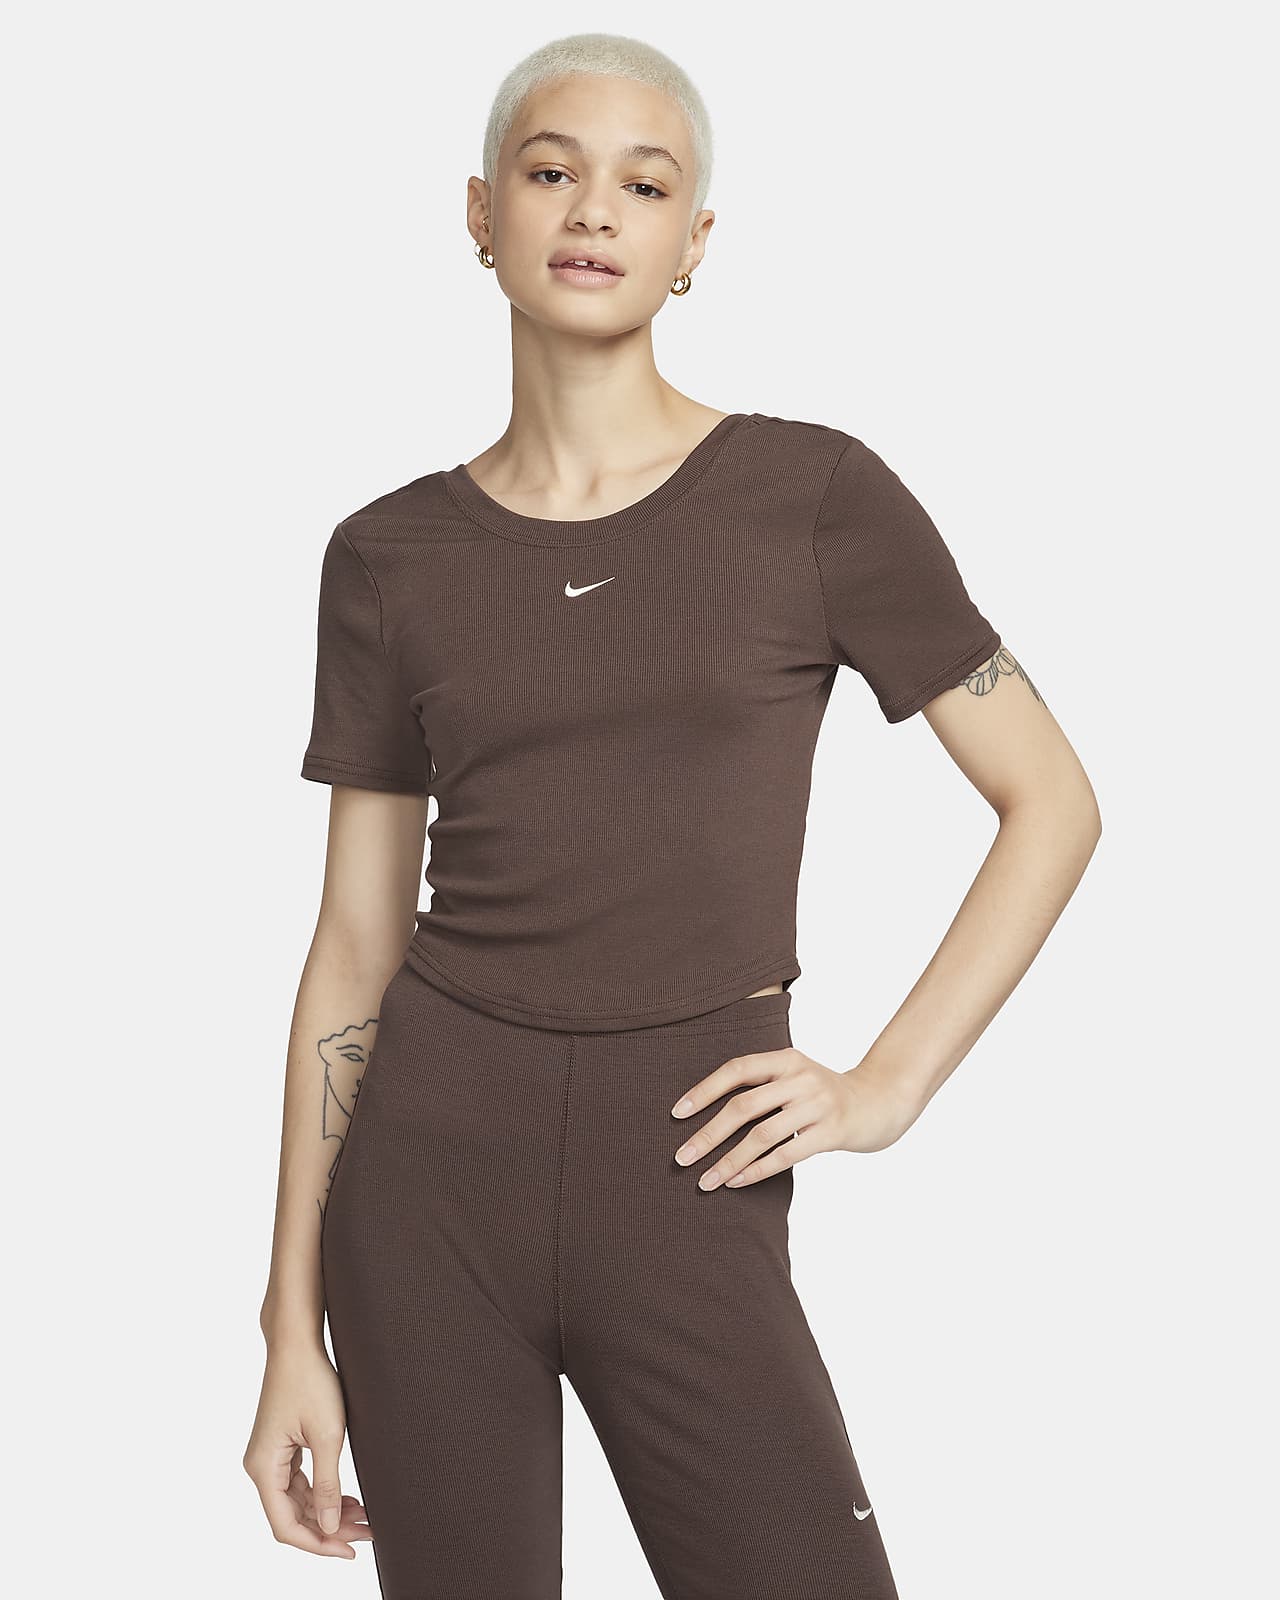 Γυναικεία κοντομάνικη μπλούζα σε εφαρμοστή γραμμή με διακριτική ριμπ ύφανση και βαθύ στρογγυλό άνοιγμα πίσω Nike Sportswear Chill Knit